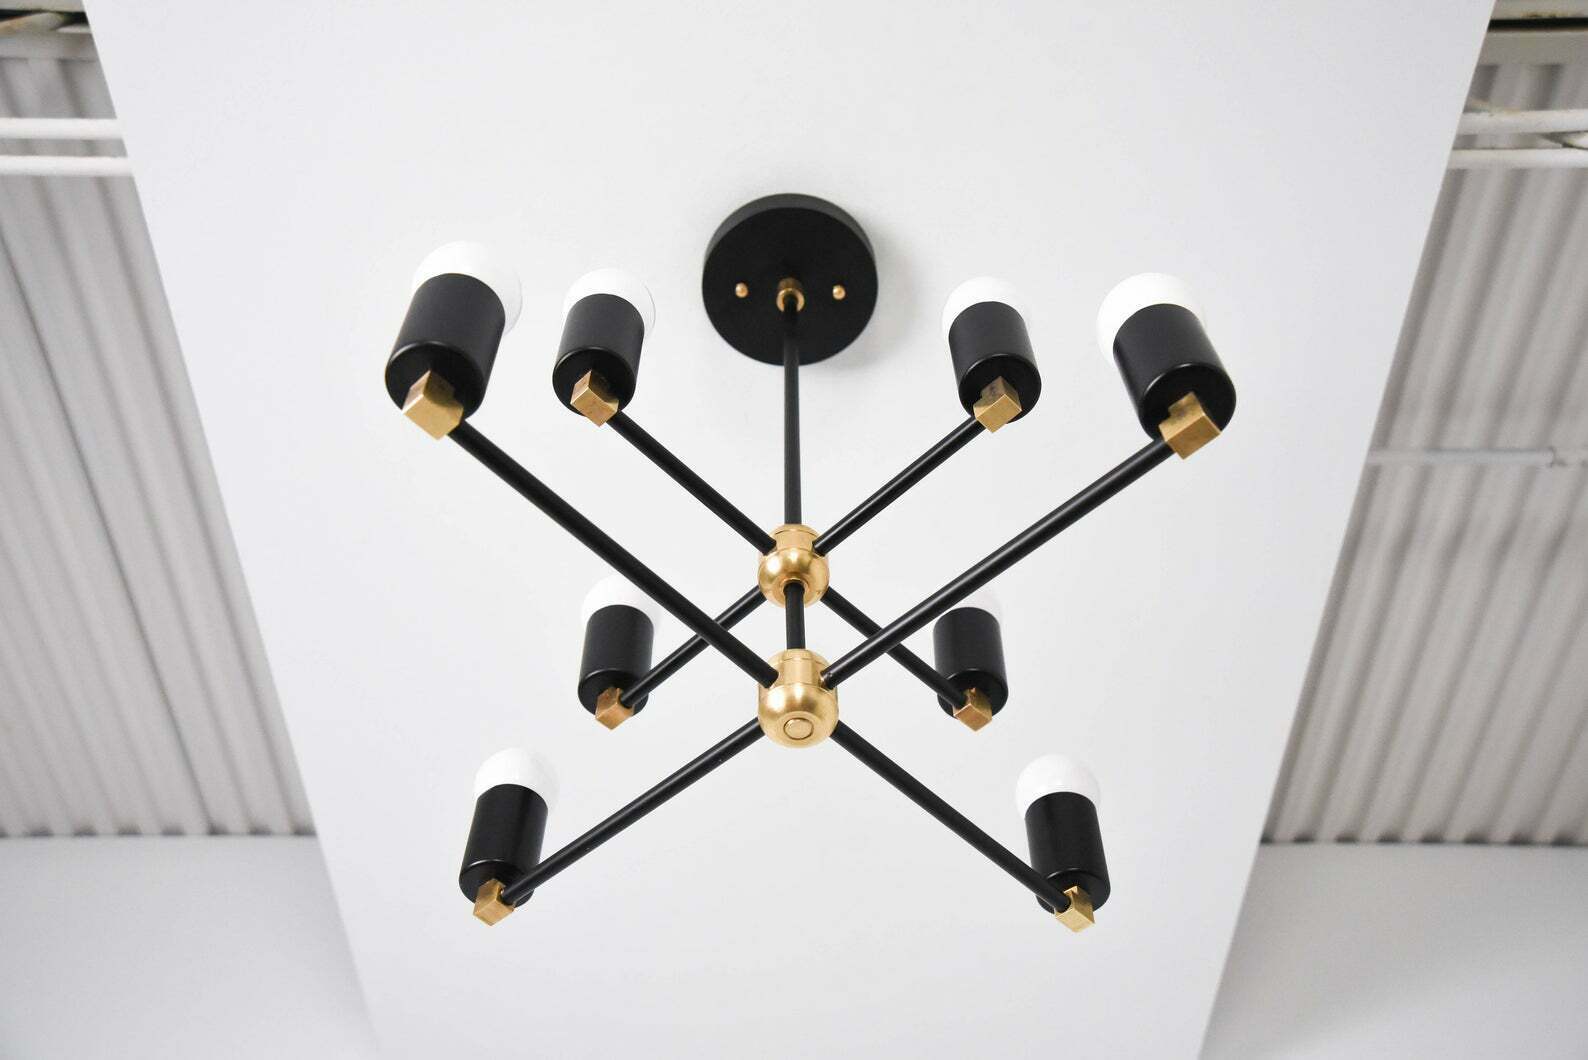 8 Light Sputnik Brass Chandelier Handmade Industrial Light Fixture - Doozie Light Studio